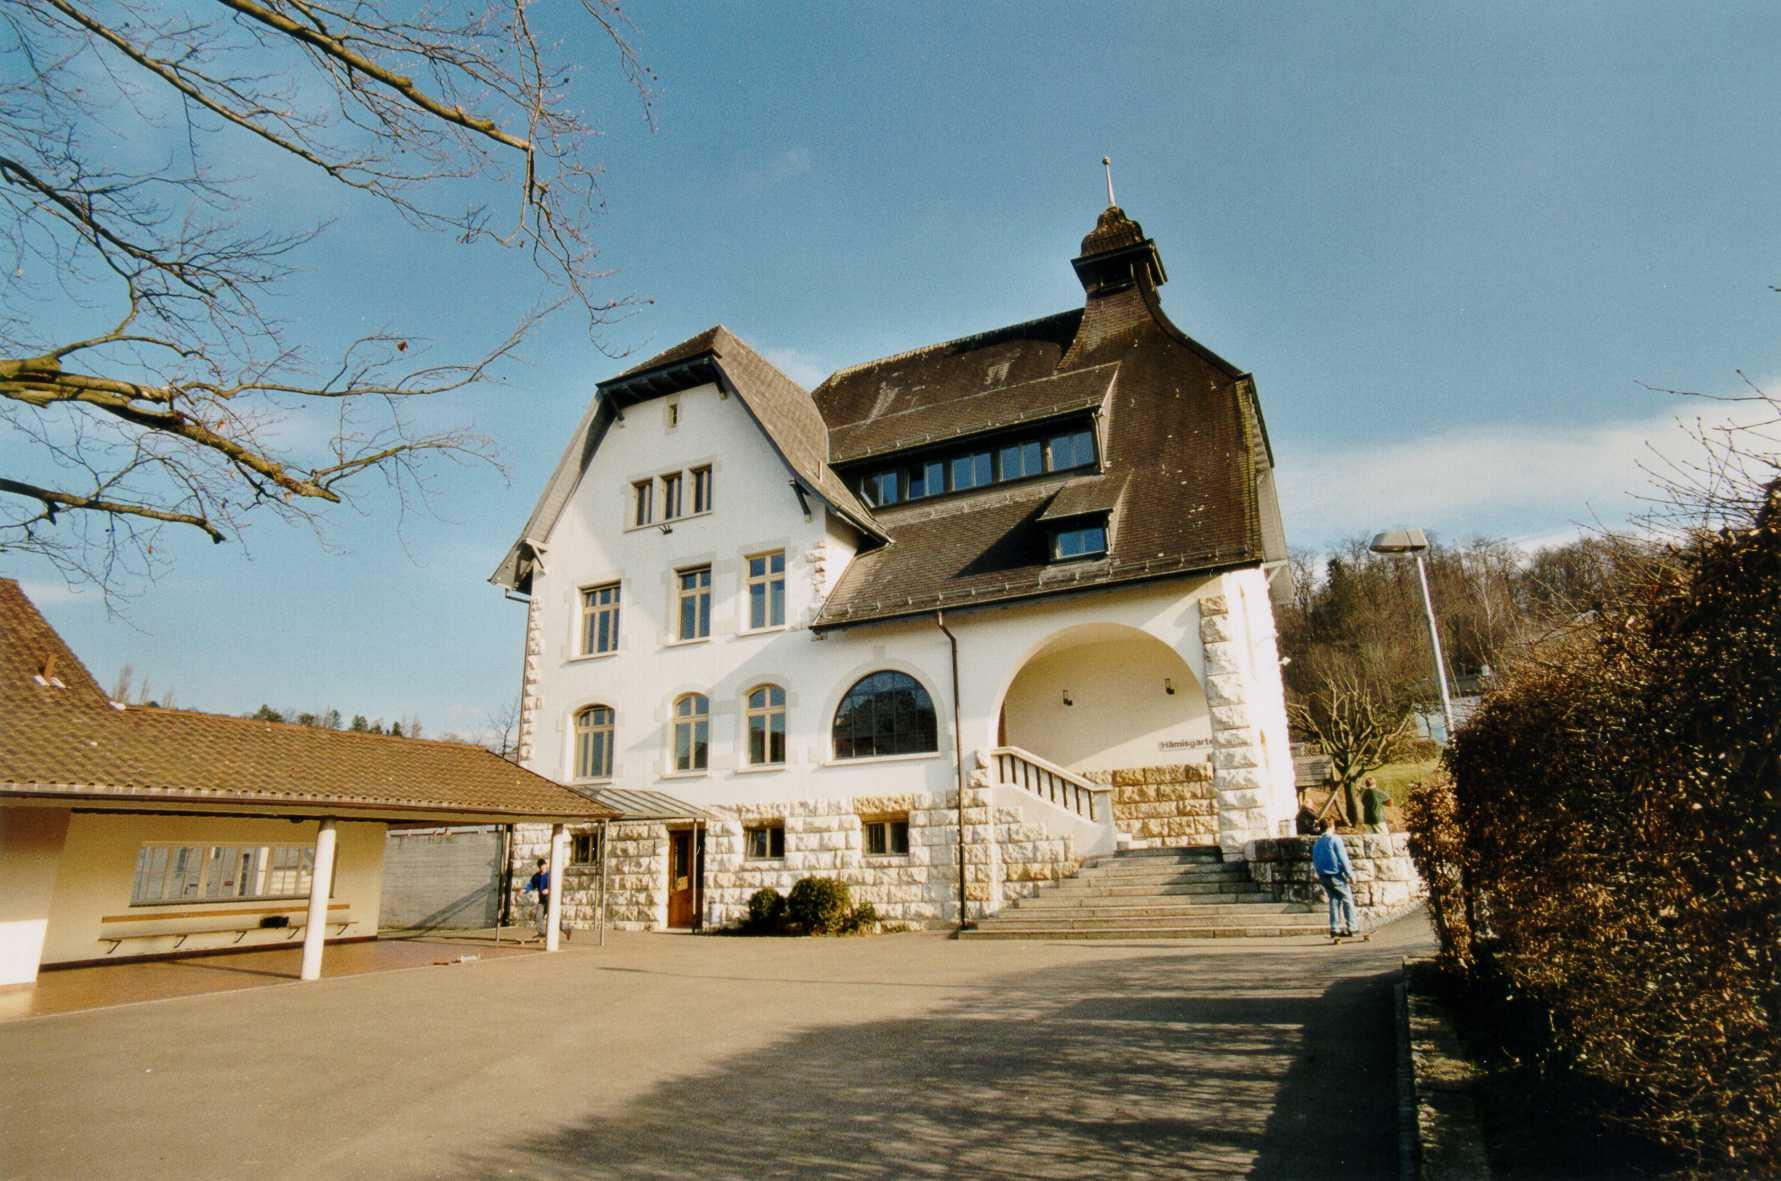 Hämisgartenschulhaus